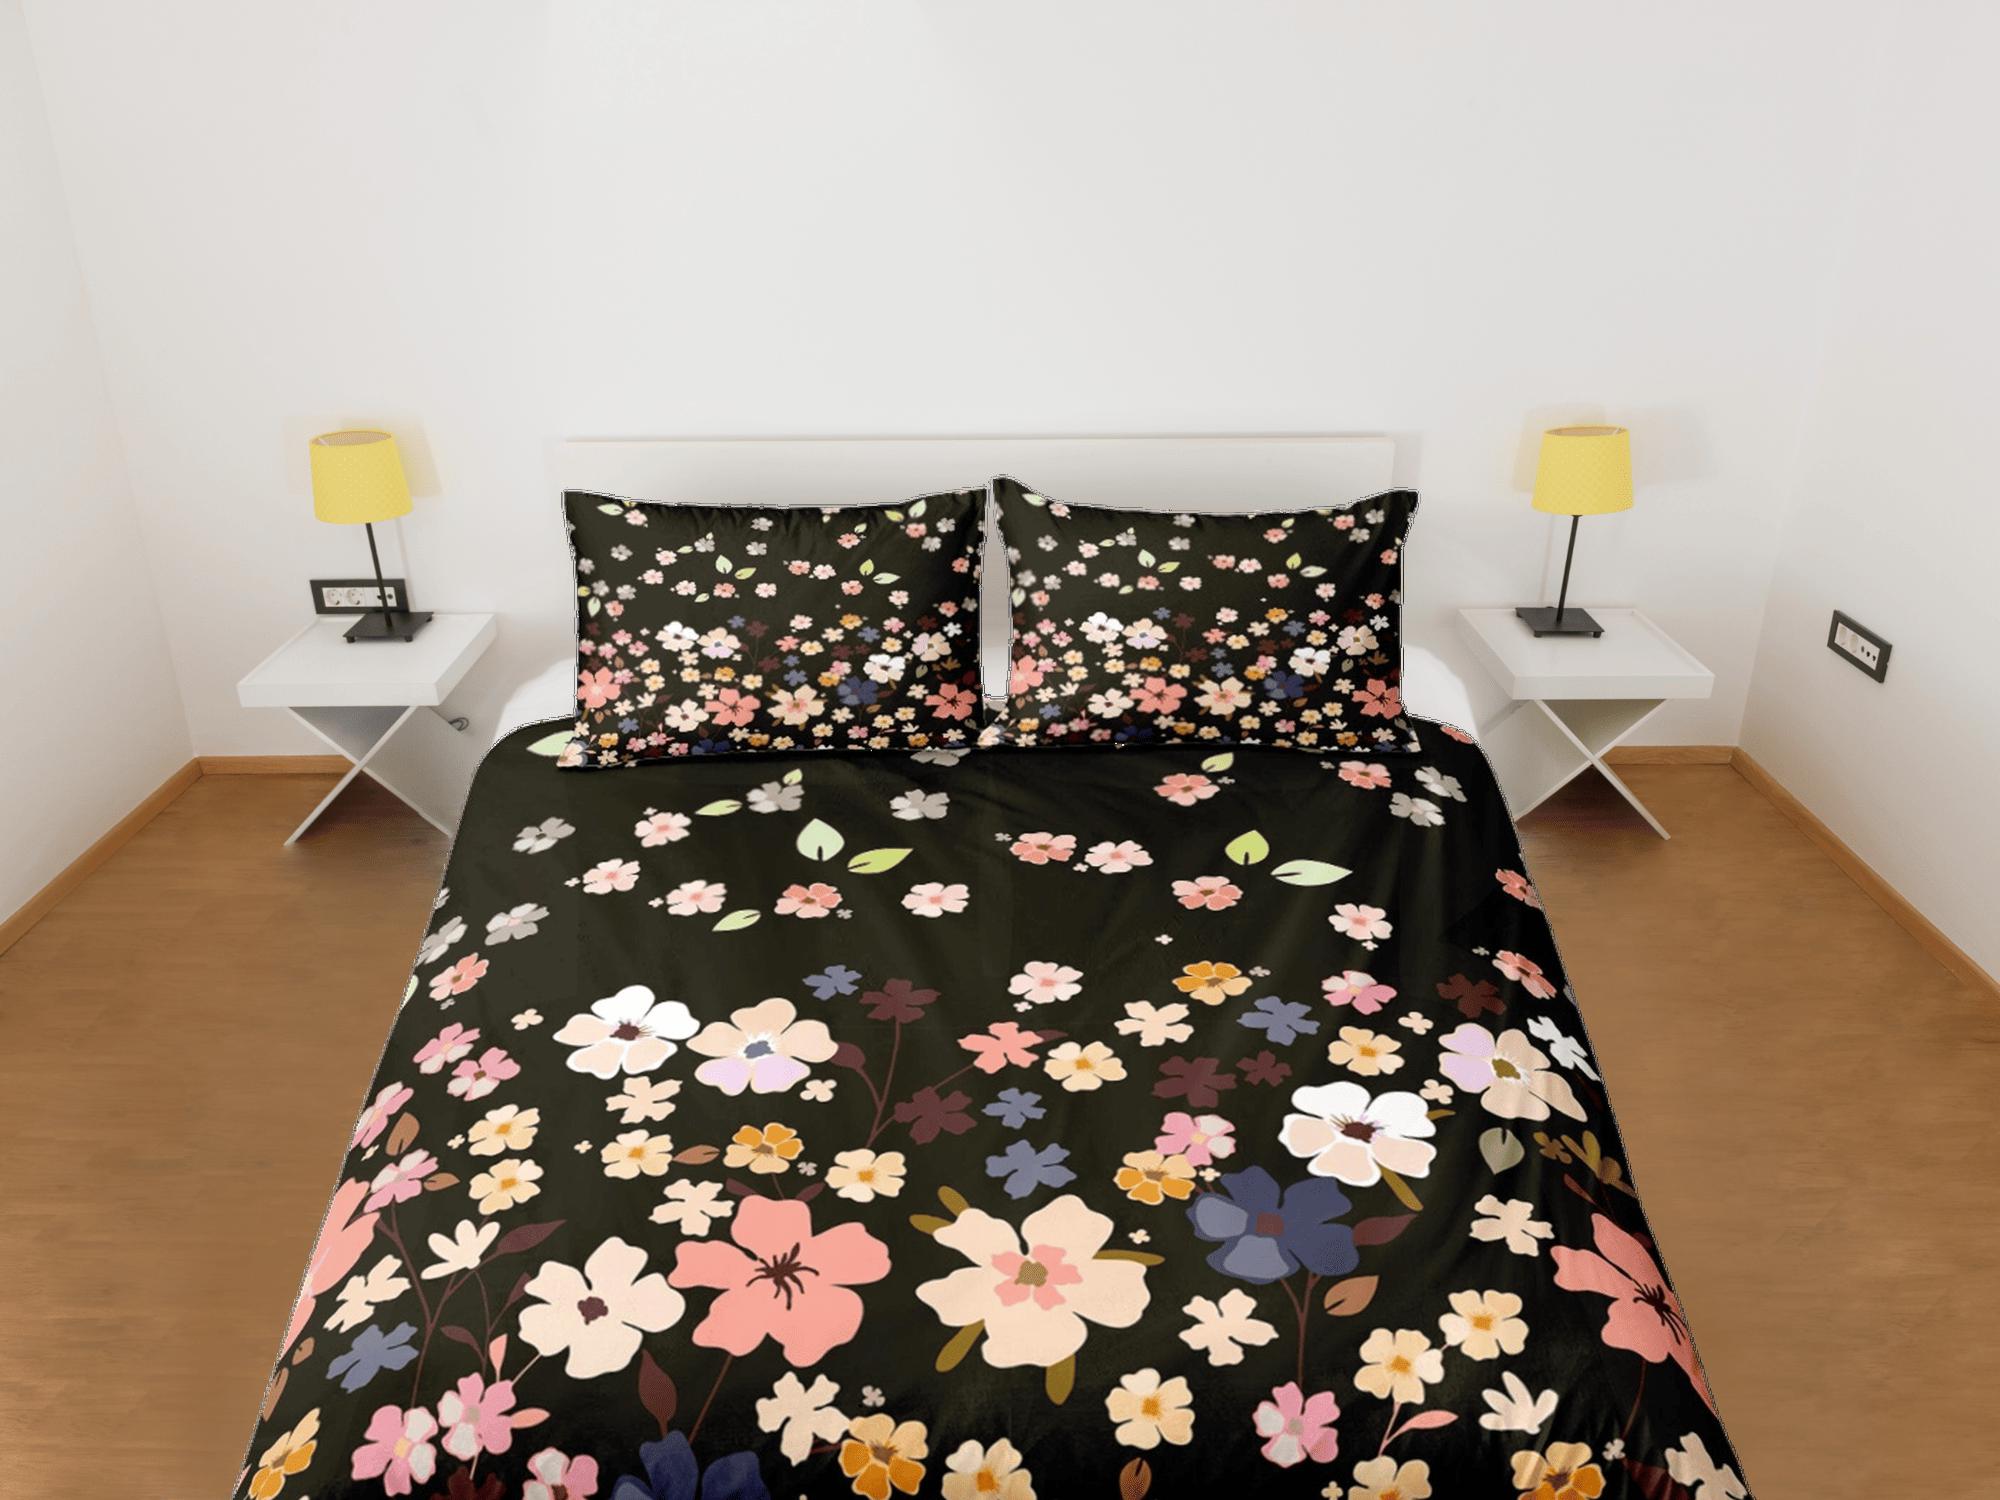 daintyduvet Dainty floral bedding, black bohemian duvet cover queen, king, boho duvet, designer bedding, aesthetic bedding, maximalist full size bedding